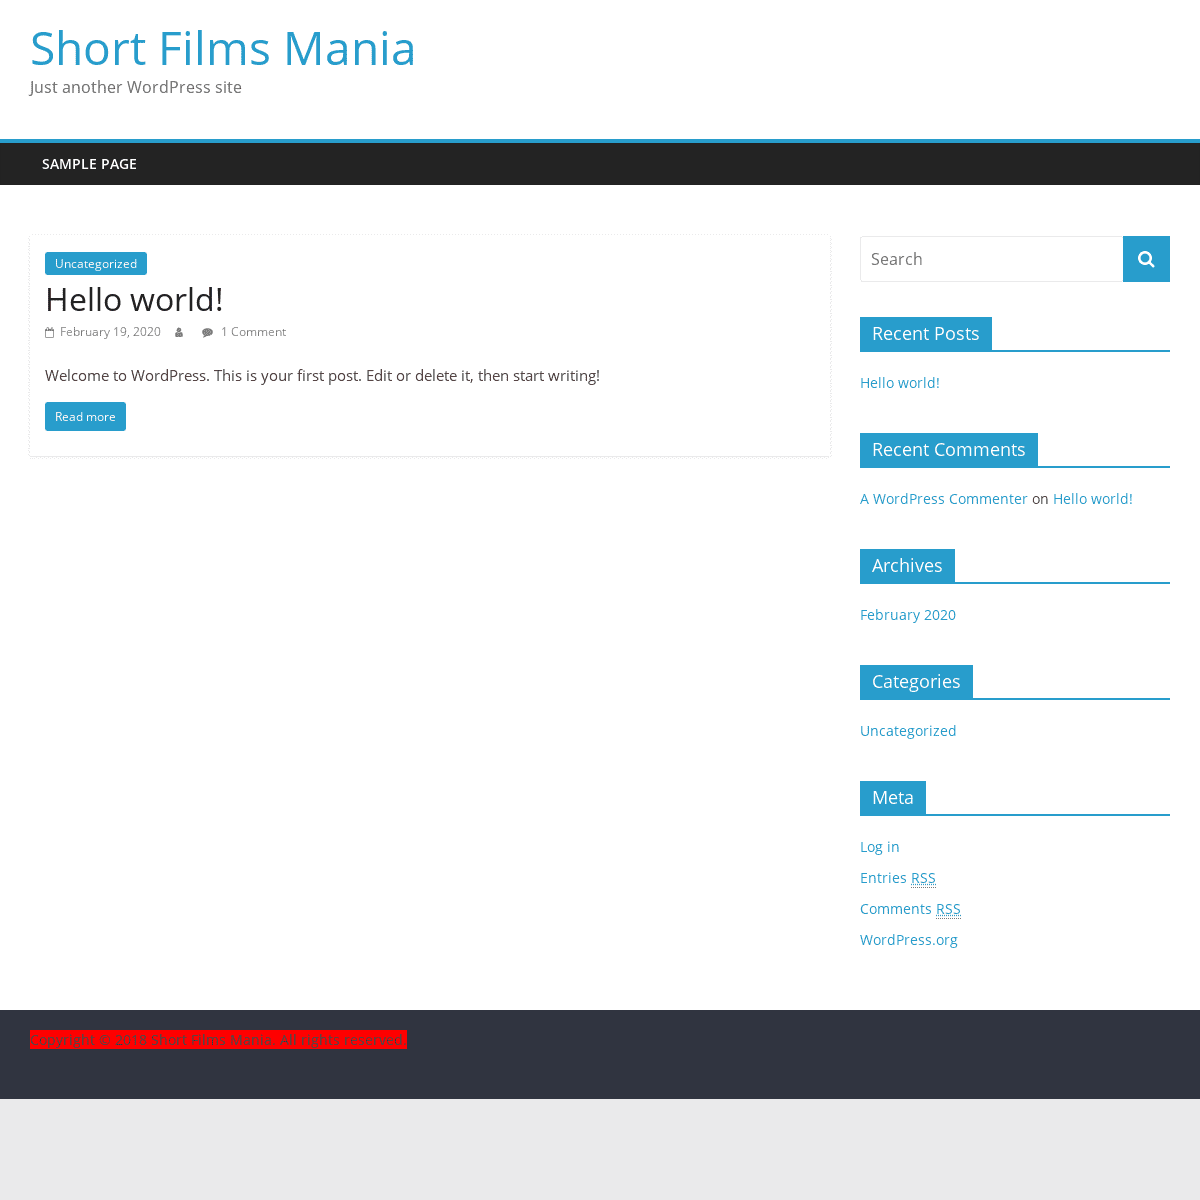 A complete backup of shortfilmsmania.com